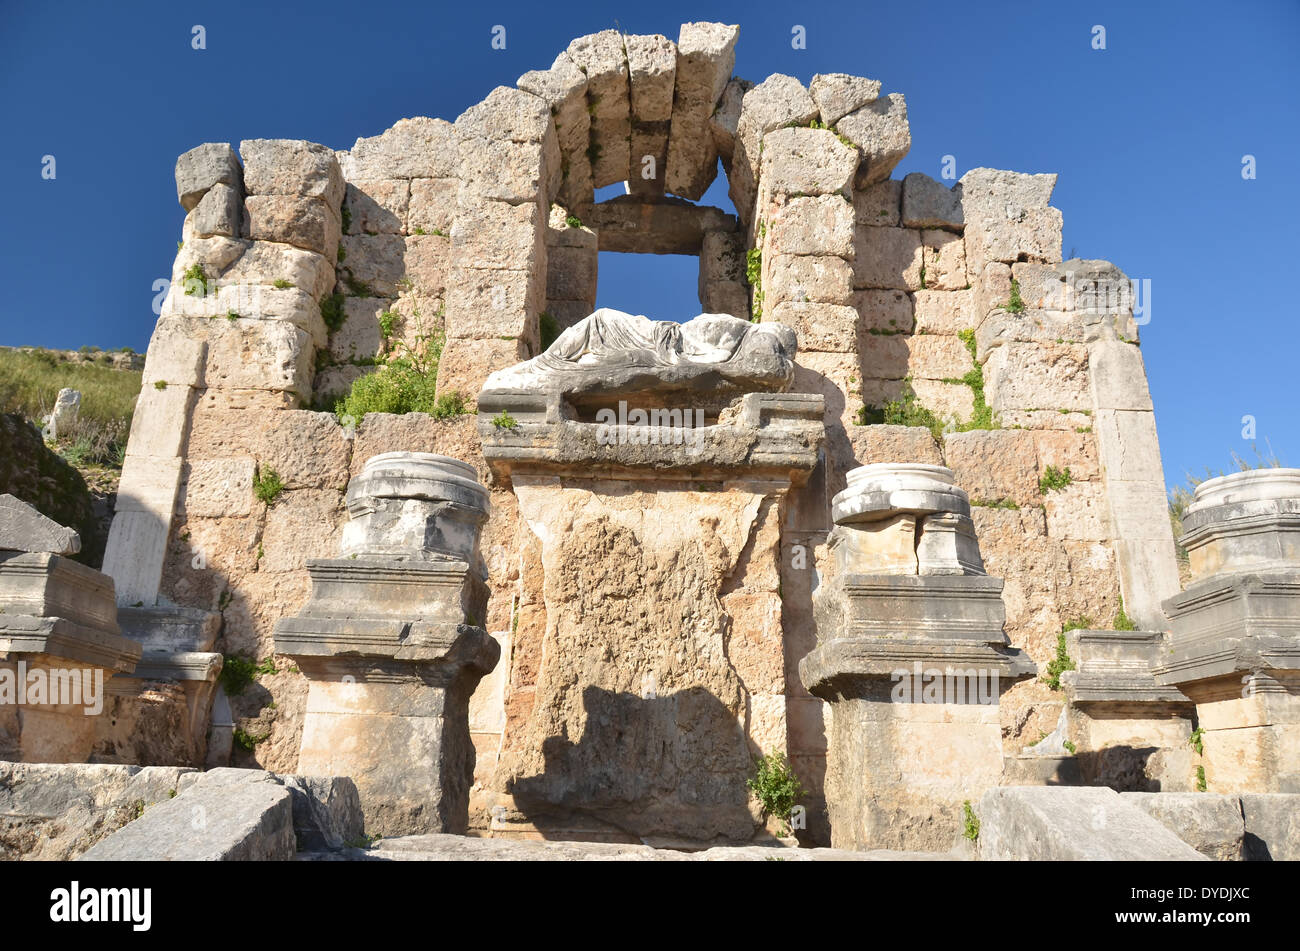 Grèce Europe Grèce antique architecture grecque classique en pierre de l'Europe turquie perge ruines méditerranéen demeure temple construire Banque D'Images